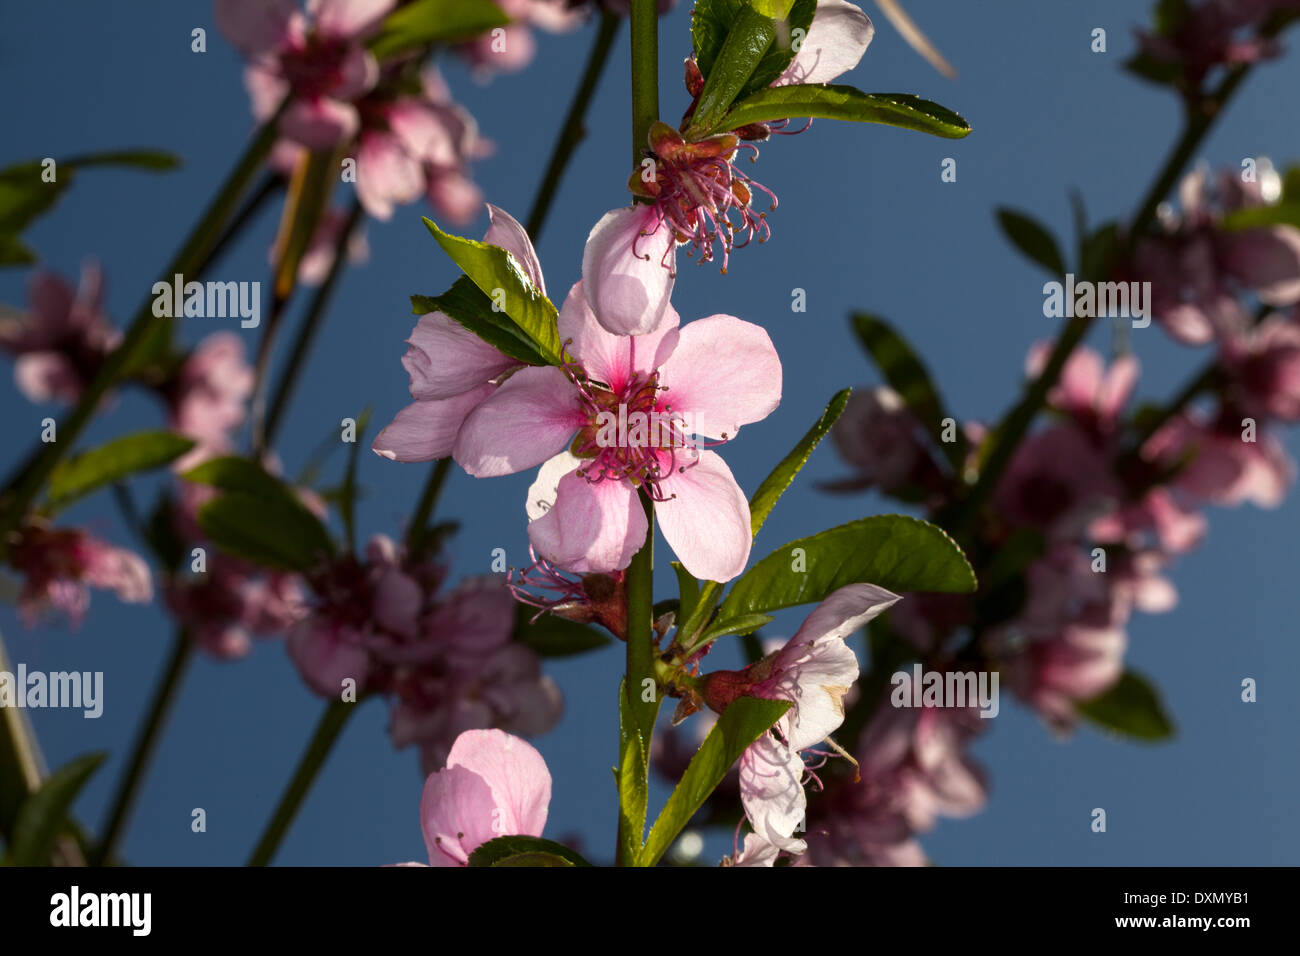 Peach blossoms in bloom, Novato, California, USA Stock Photo